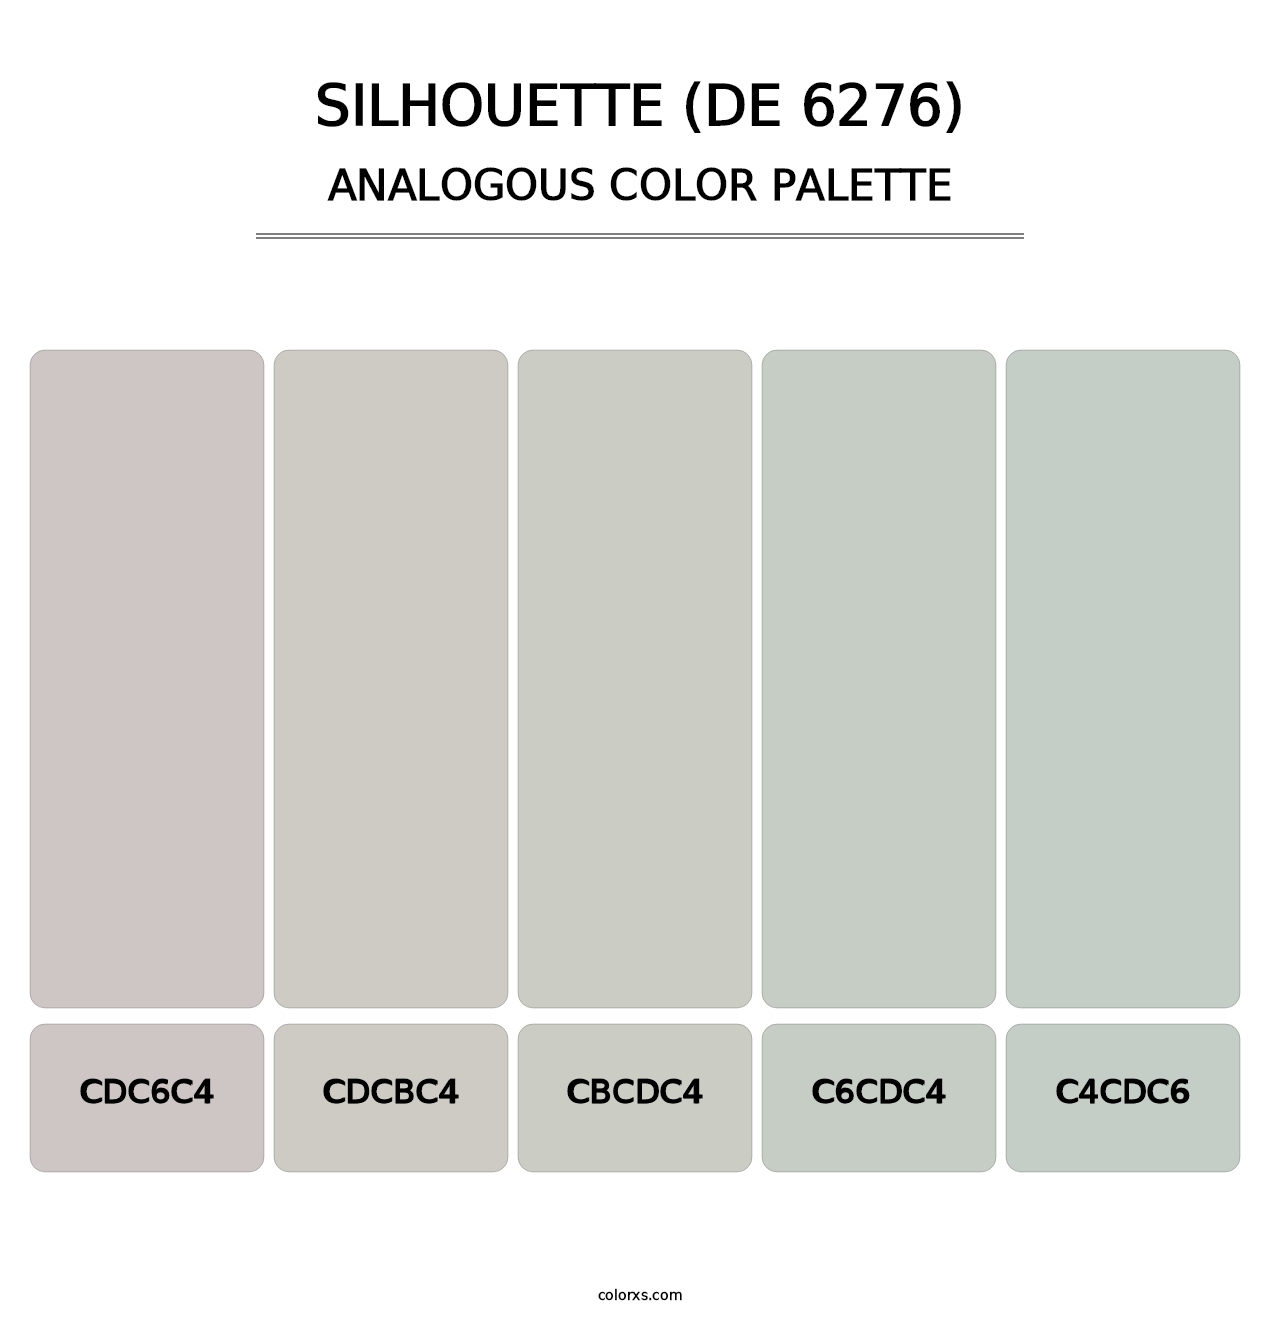 Silhouette (DE 6276) - Analogous Color Palette